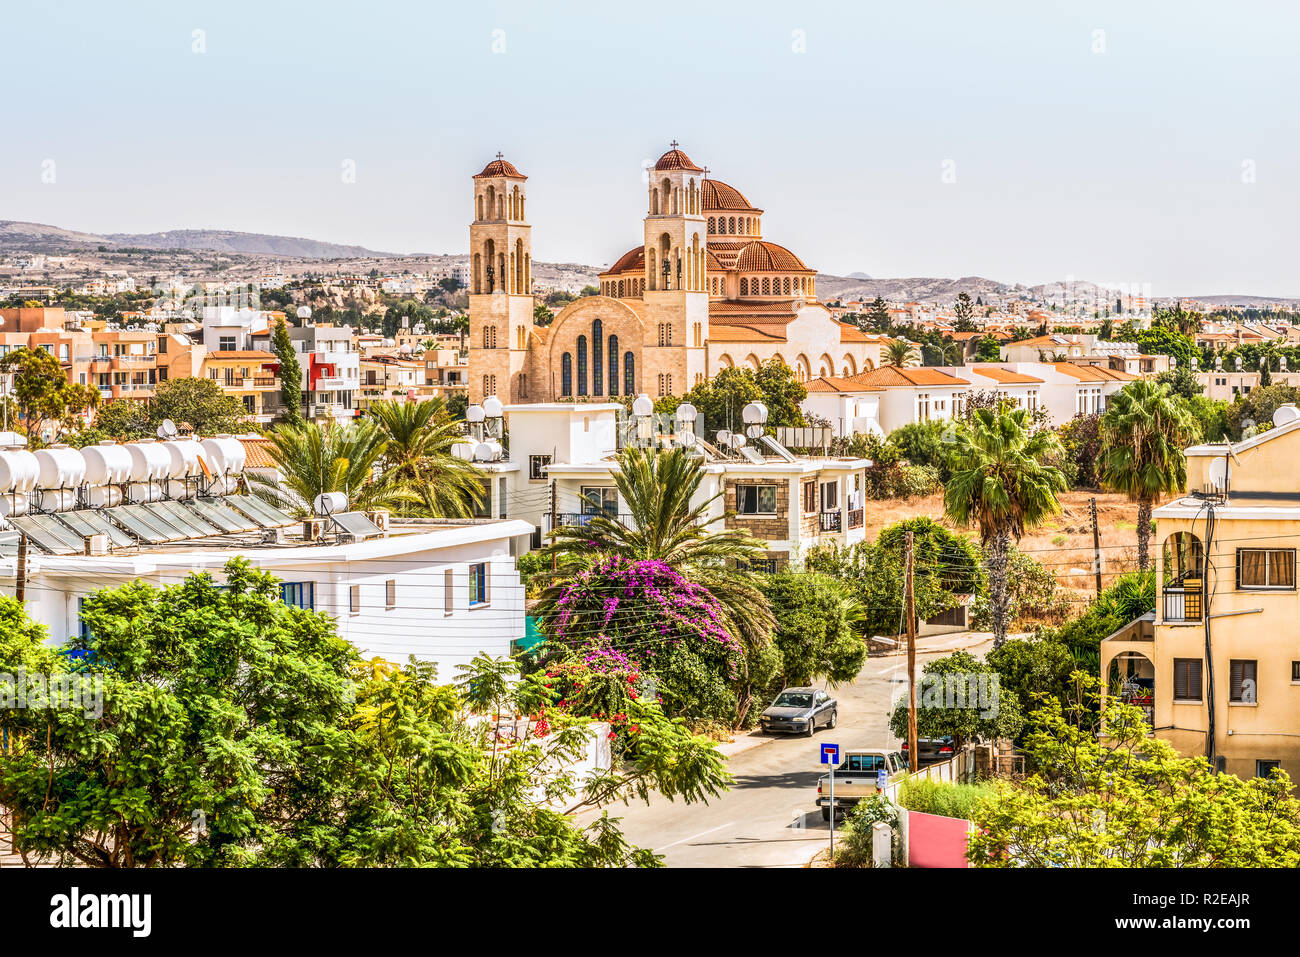 Vue de la ville de Paphos à Chypre. Paphos est connue comme le centre de l'histoire ancienne et la culture de l'île. Il est très populaire en tant que centre de Banque D'Images